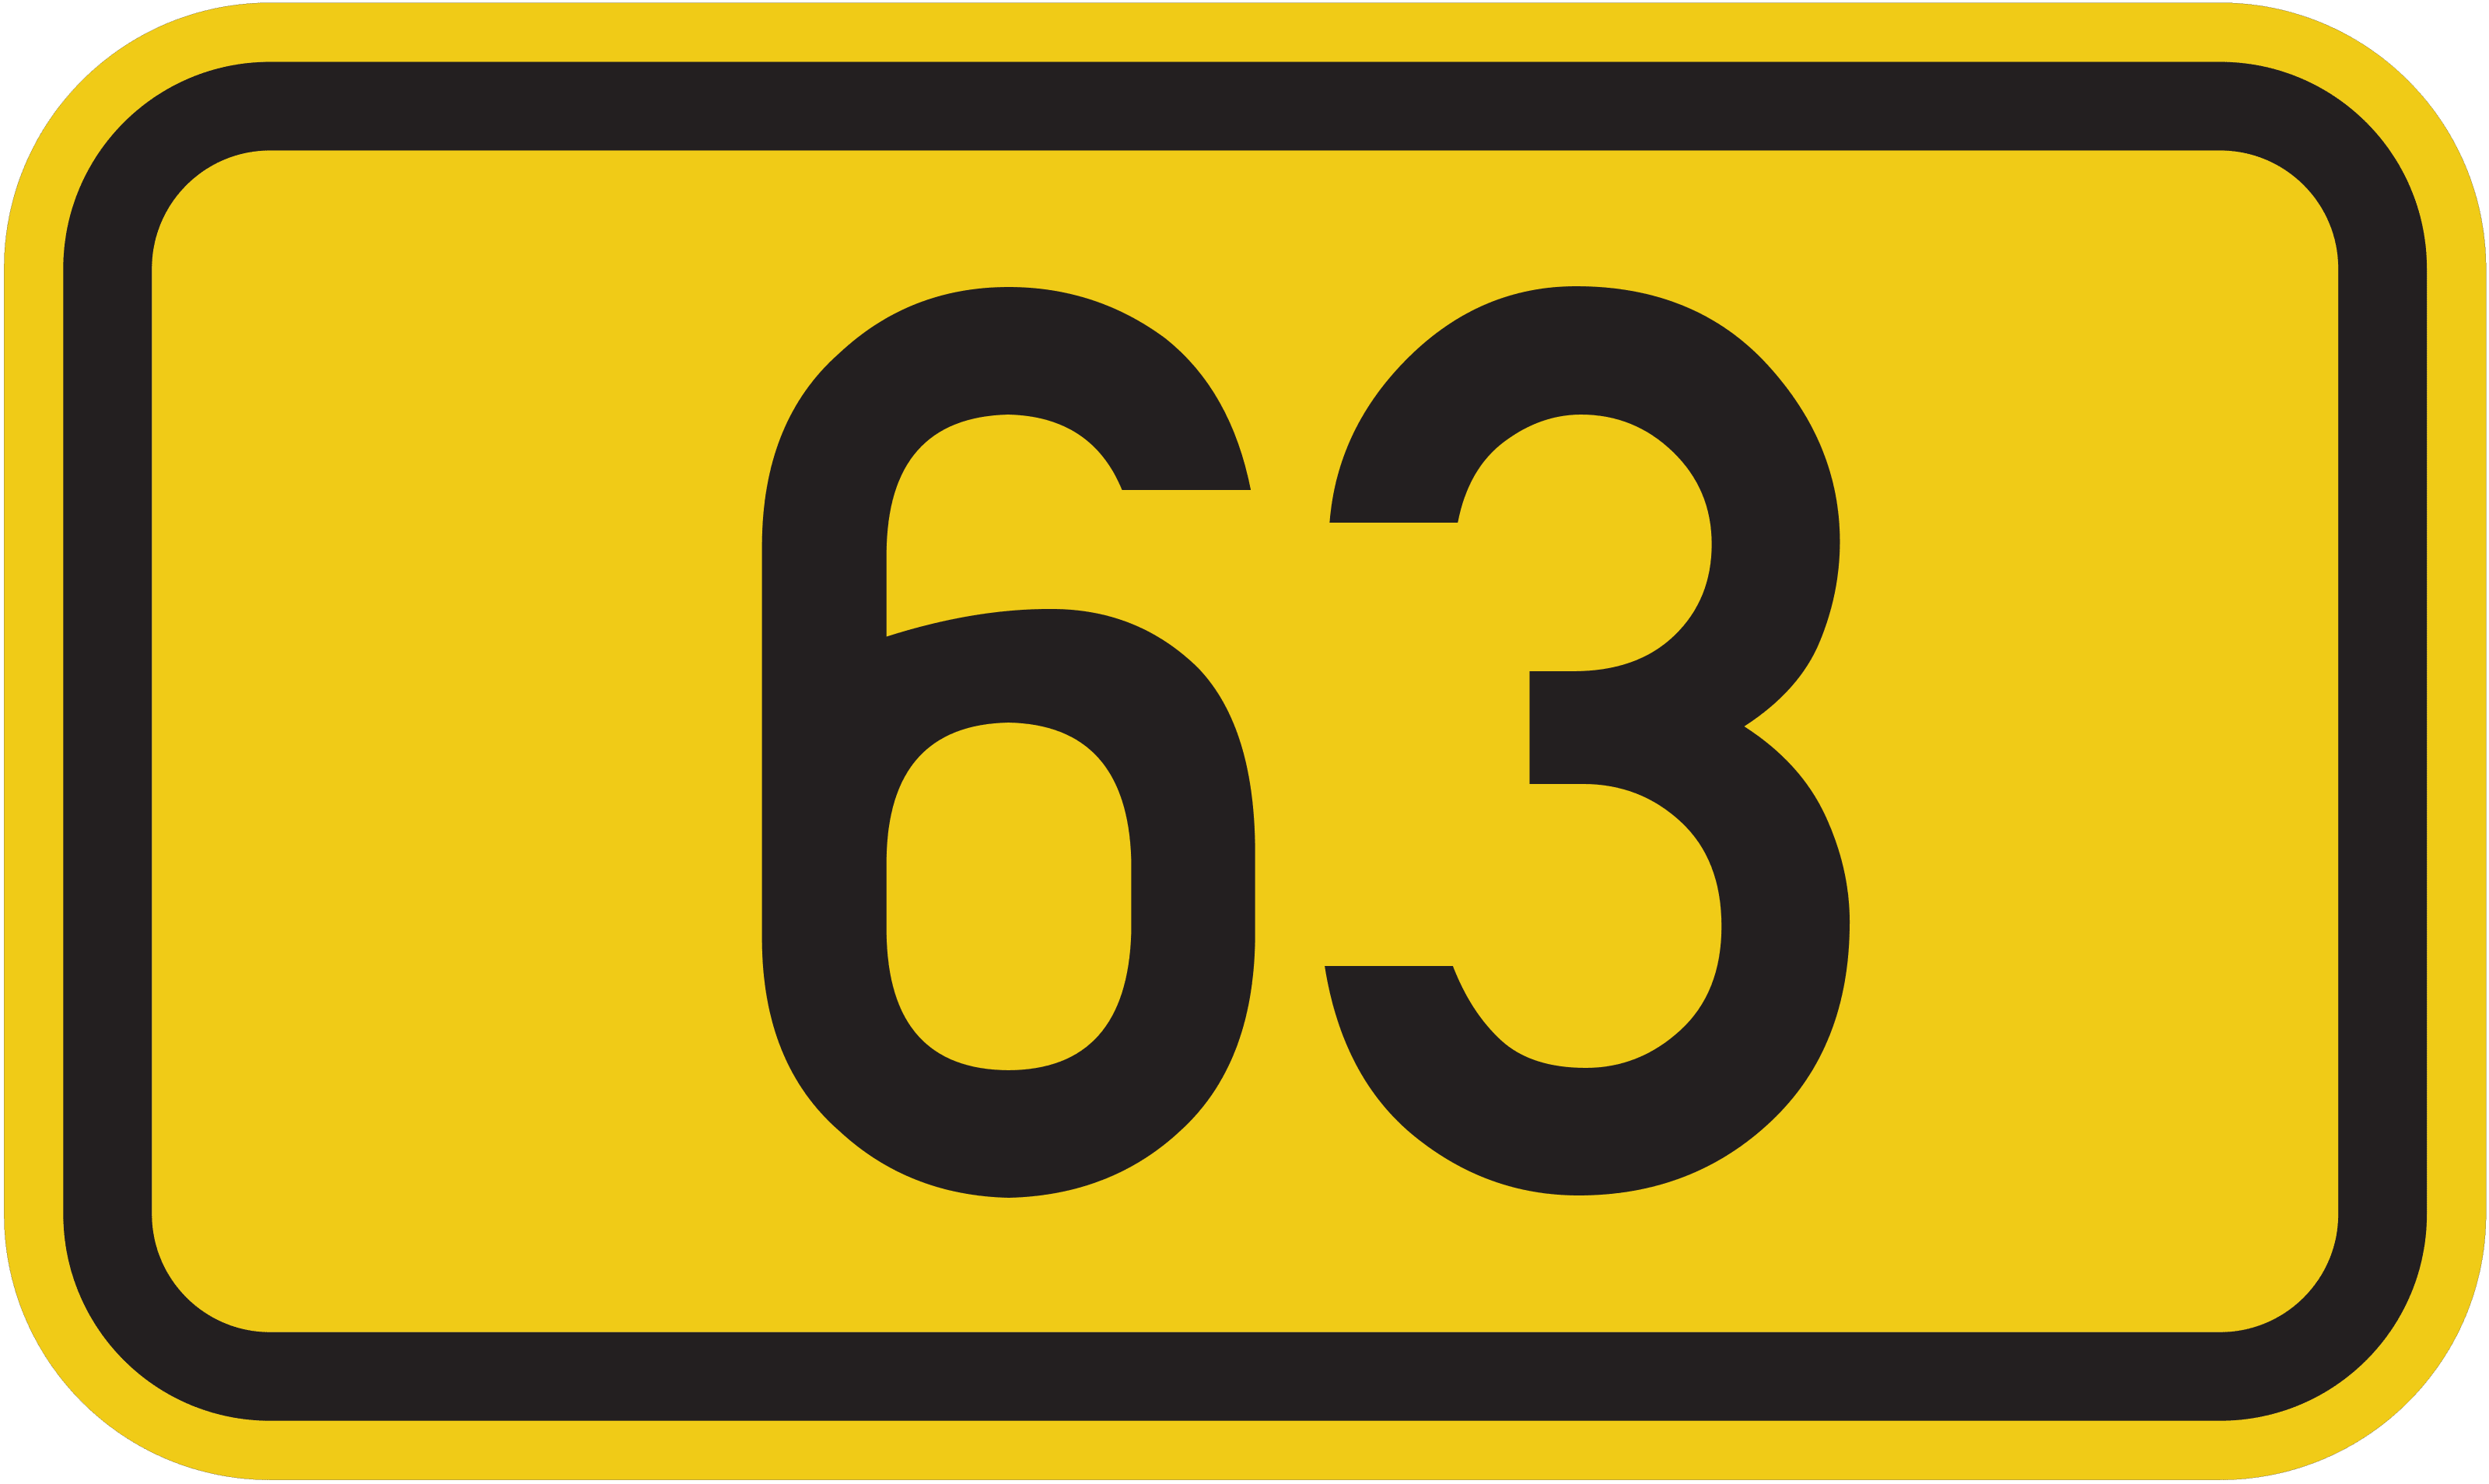 Bundesstraße B 63